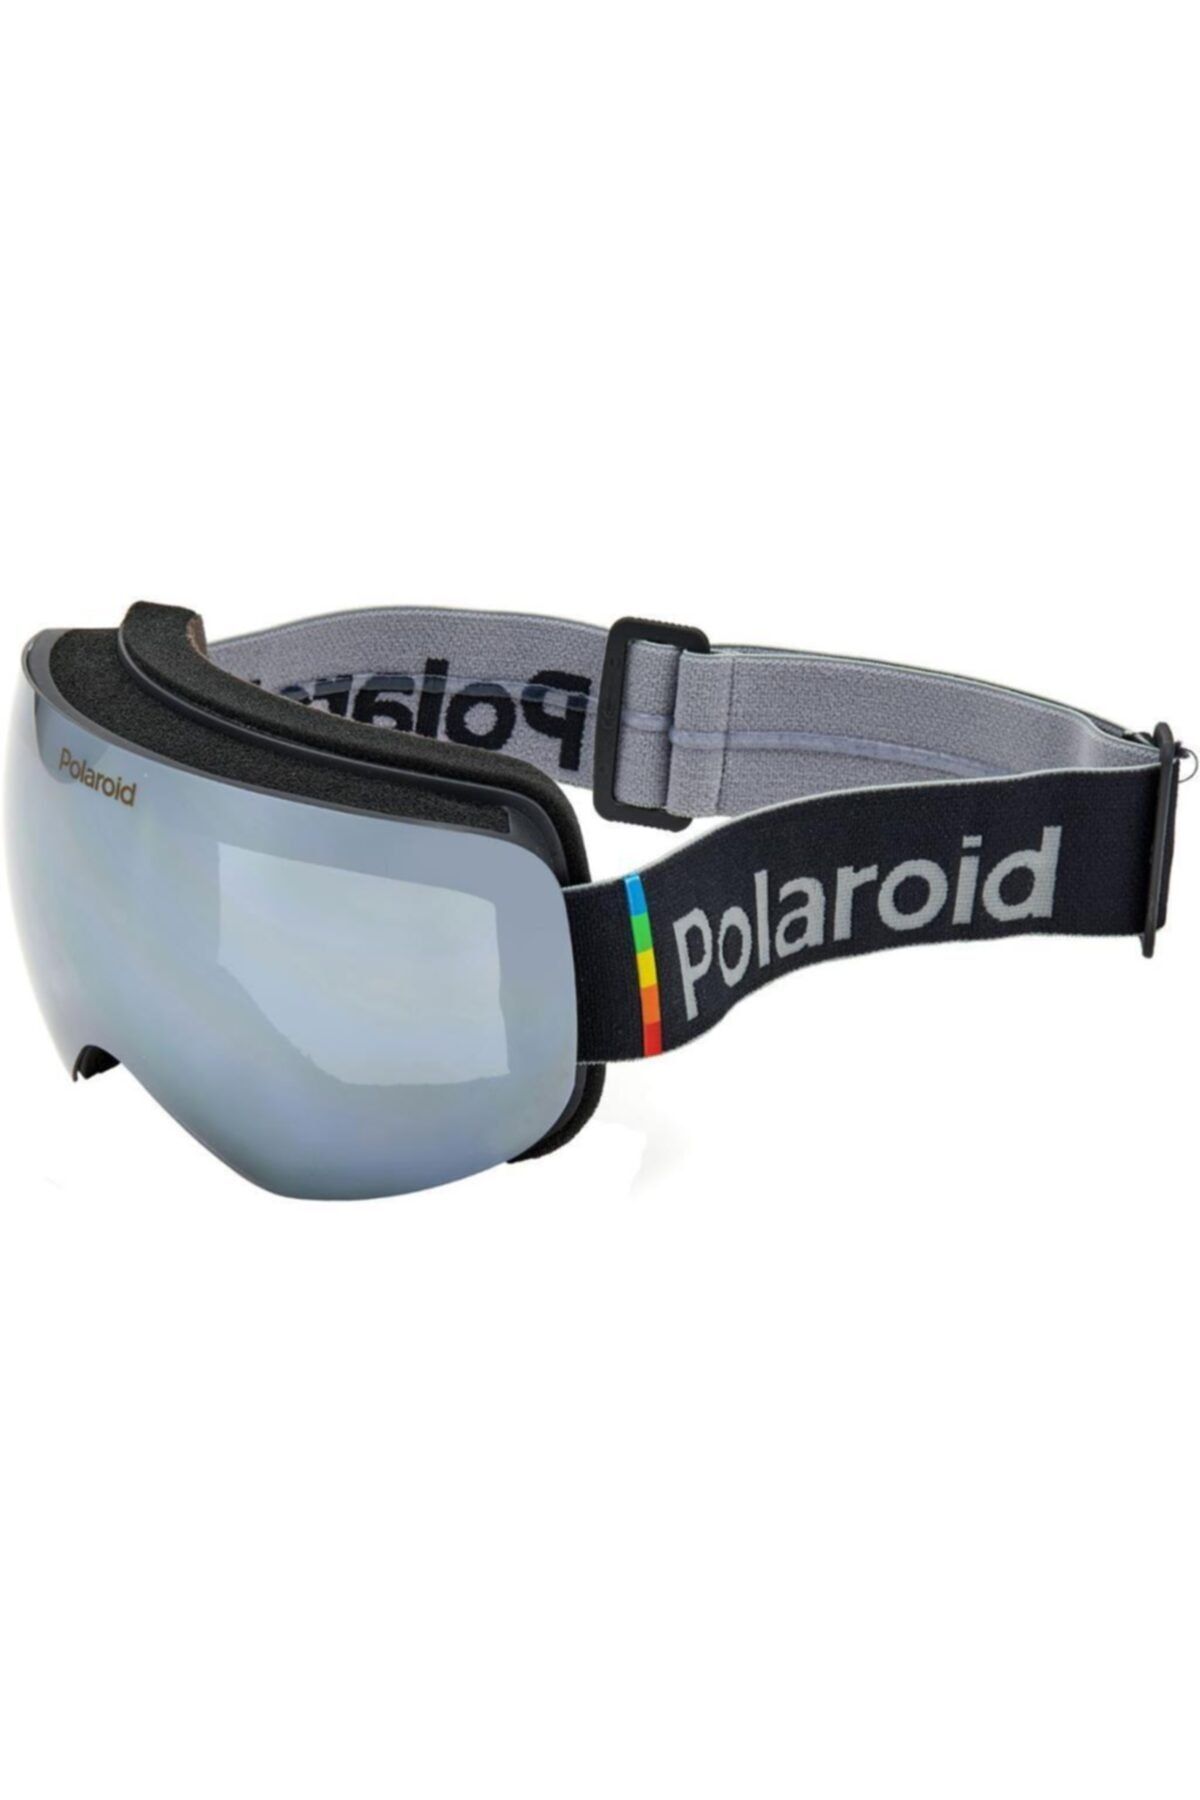 Polaroid Mask 01 9ks M9 Polarize Kayak Gözlüğü